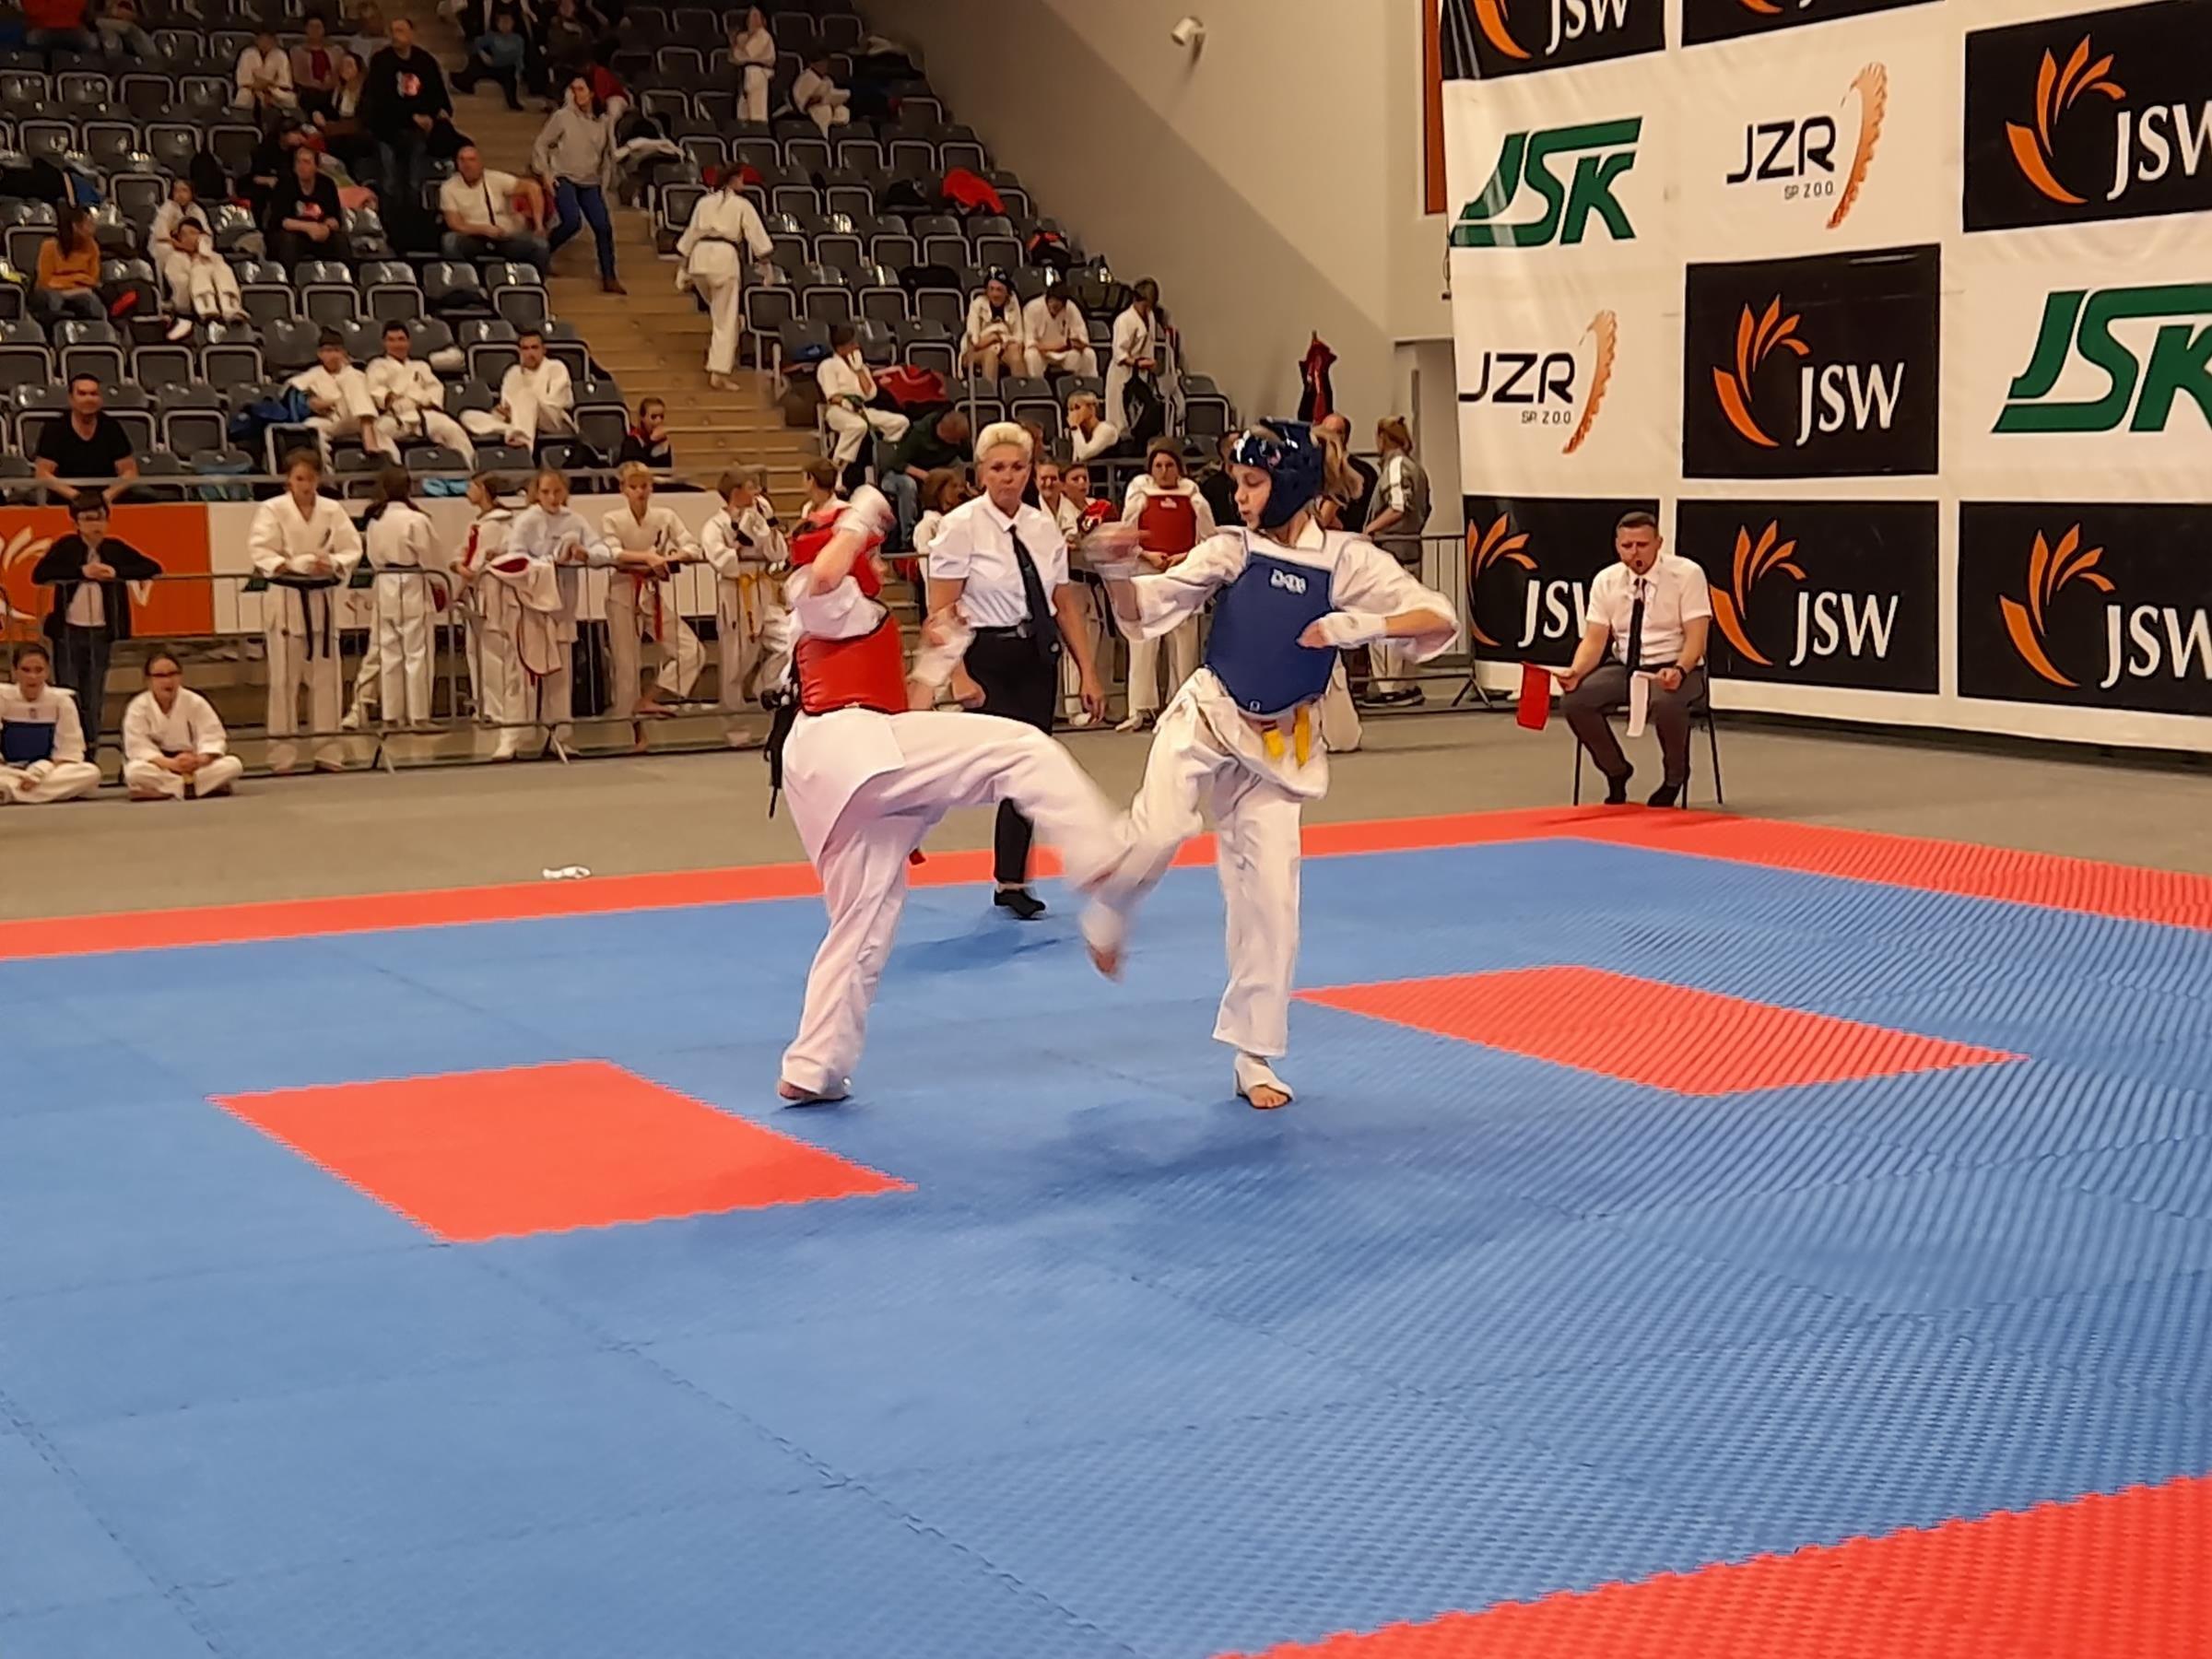 XIII Międzynarodowy Turniej Karate Kyokushin CARBON CUP – 30.10.2021 r., Jastrzębie Zdrój